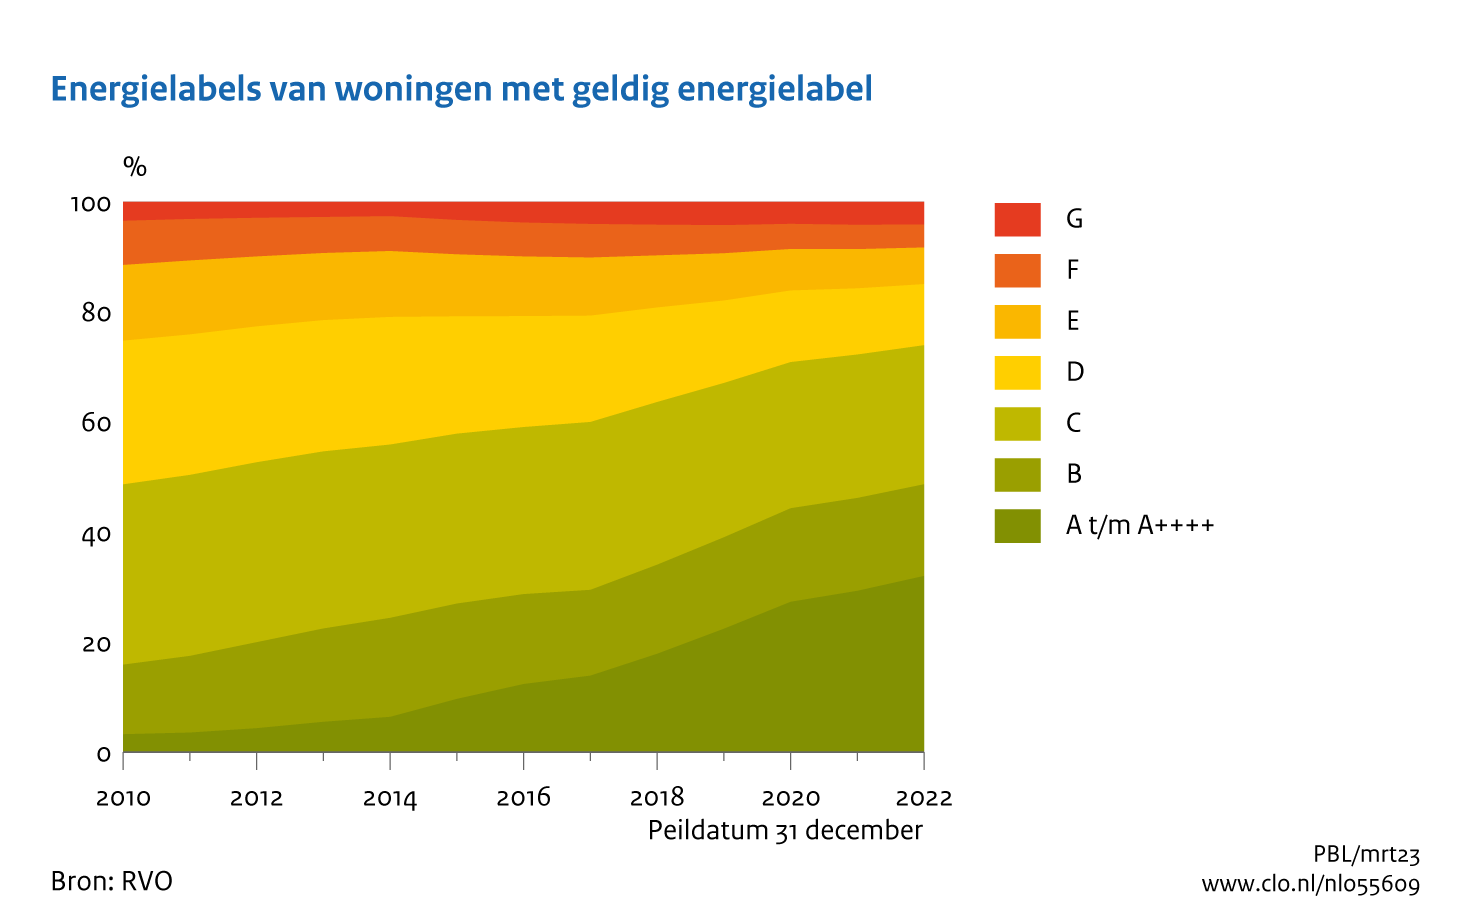 Figuur Energielabels woningen, 2010 t/m 2022. In de rest van de tekst wordt deze figuur uitgebreider uitgelegd.